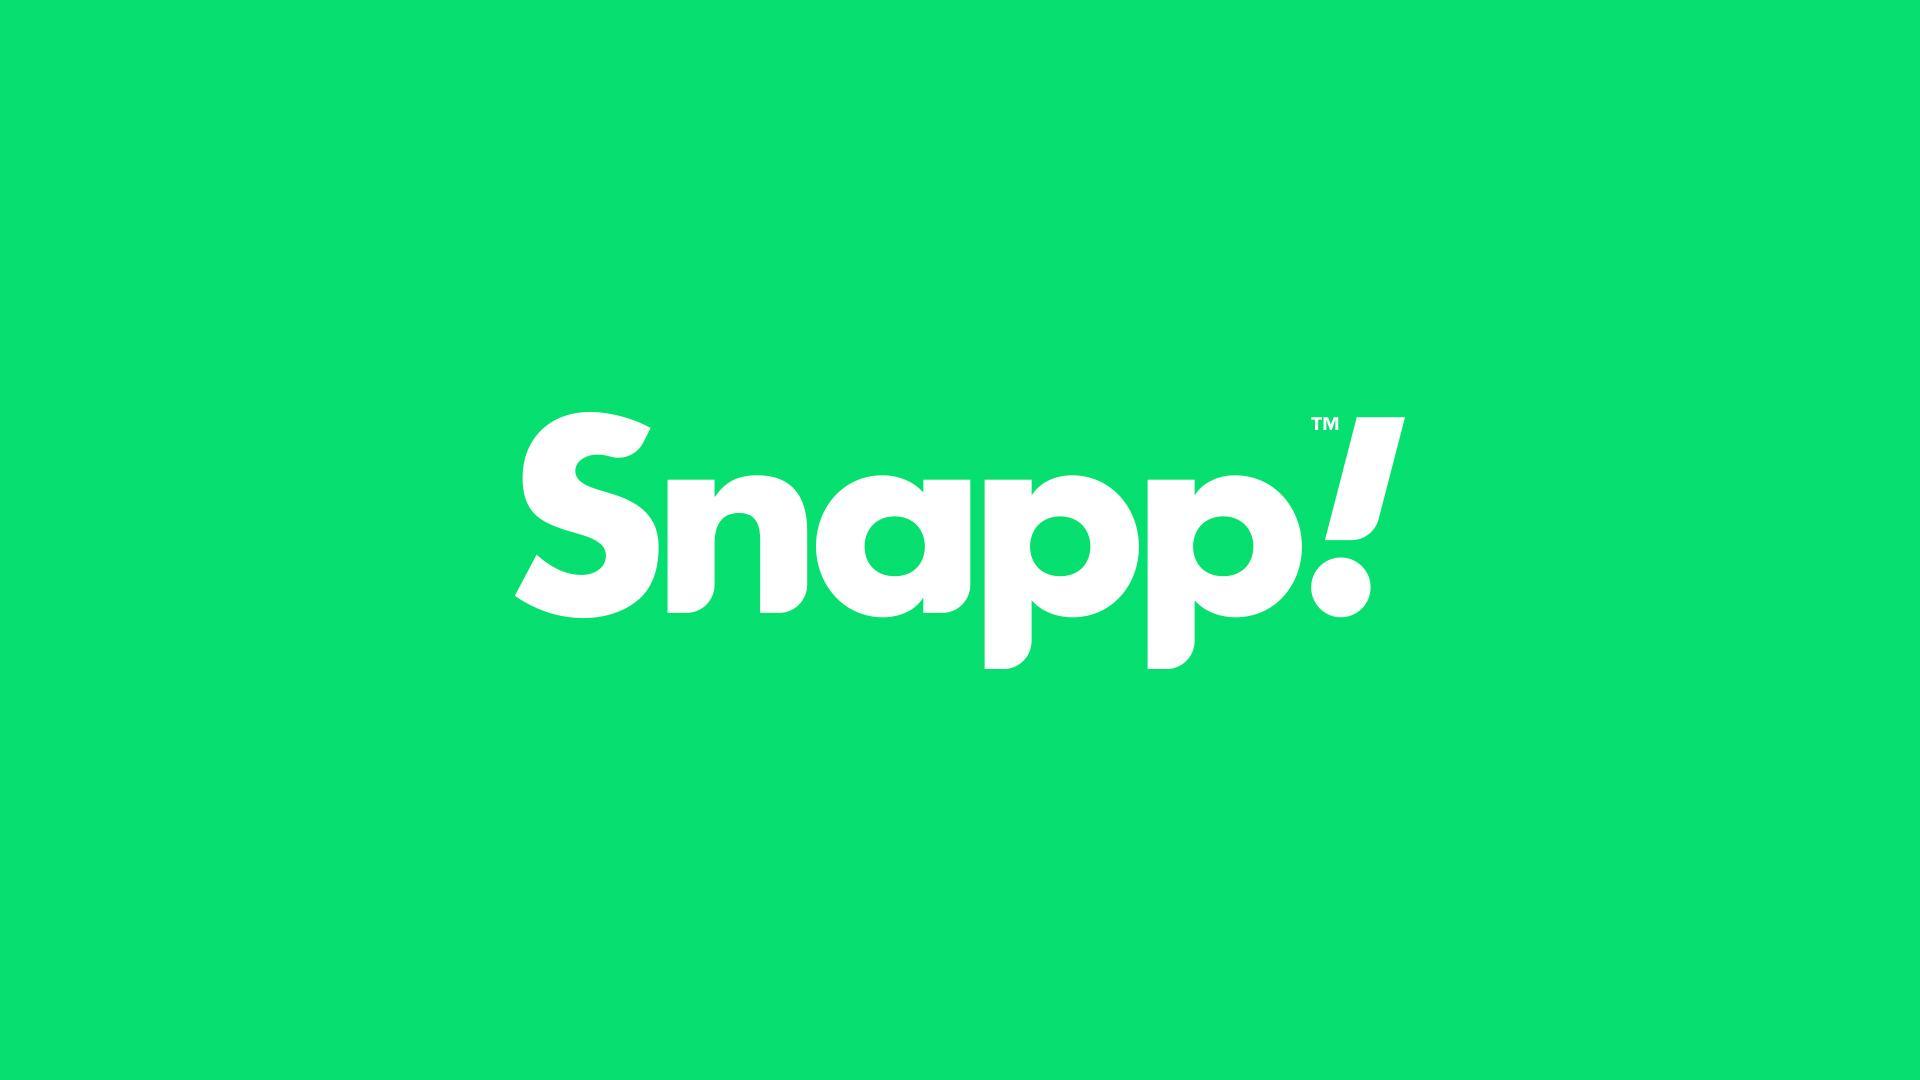 دانلود اسنپ Snapp 6.1.0 تاکسی اینترنتی جدید اندروید | ایران اپ